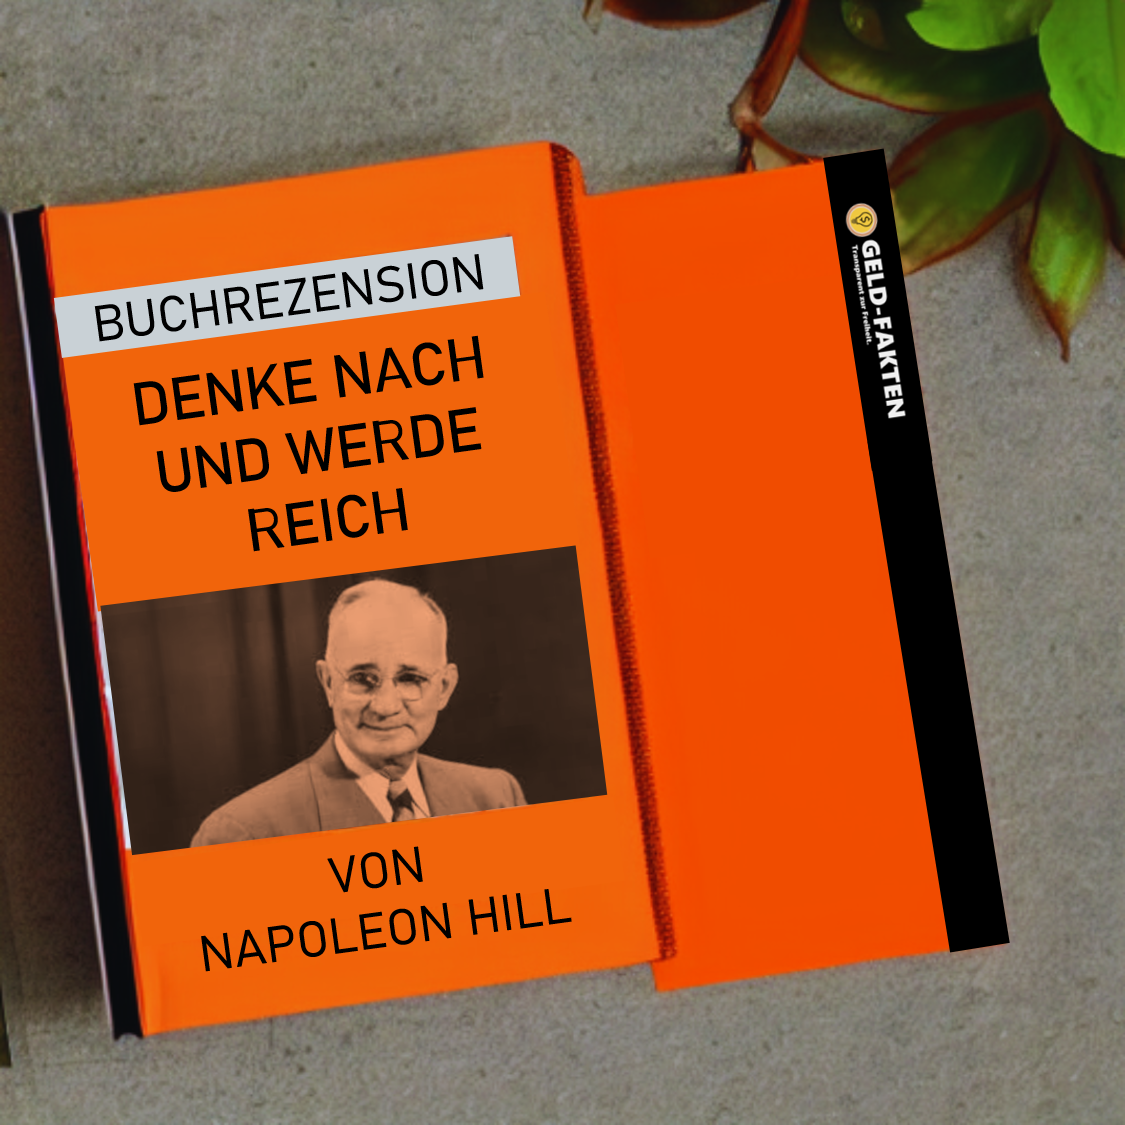 Read more about the article Denke nach und werde reich von Napoleon Hill (Buch Rezension / Zusammenfassung)